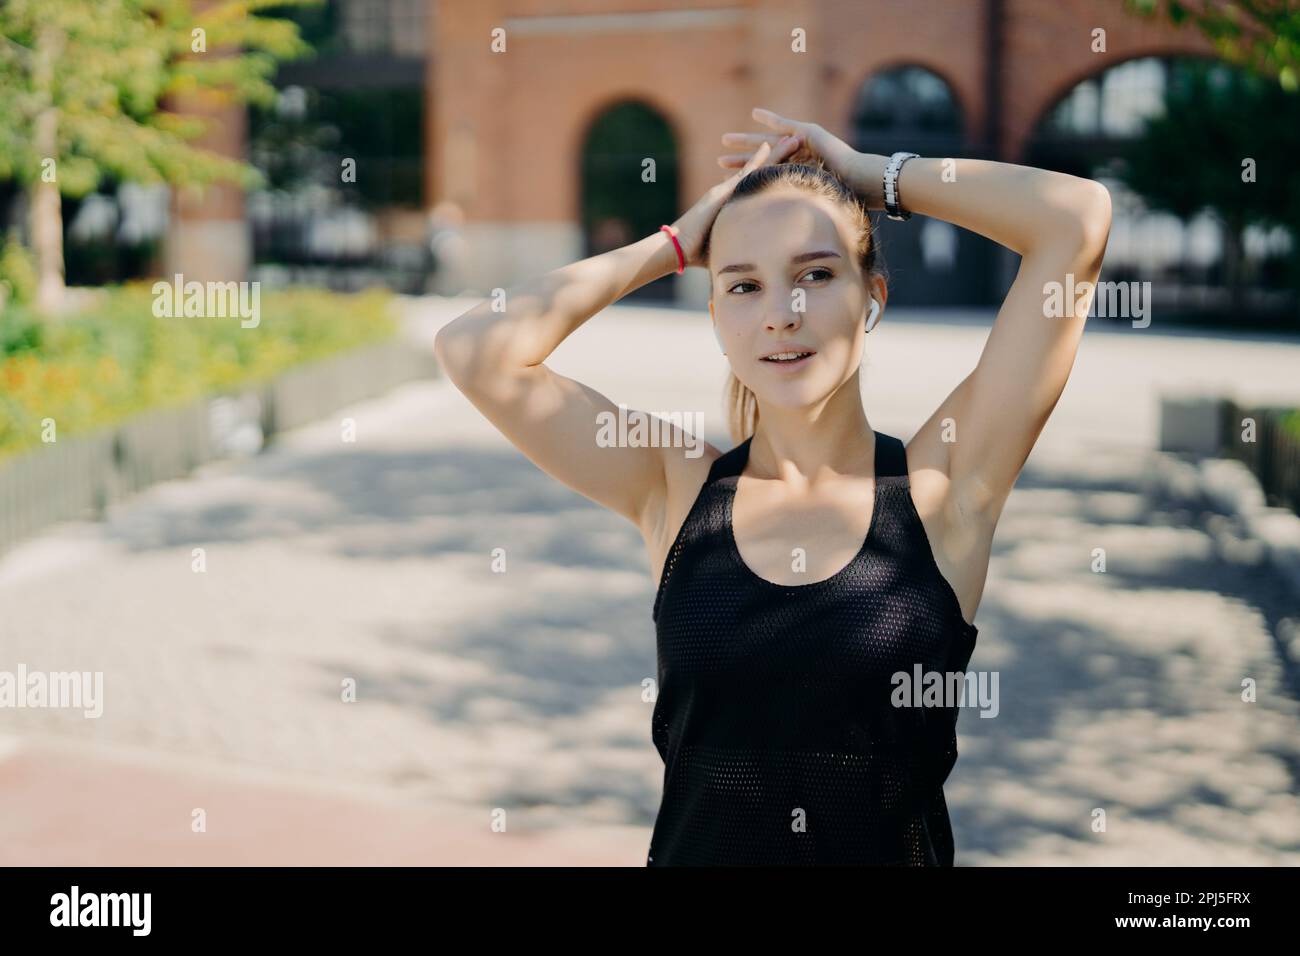 Eine nachdenkliche sportliche Frau, die sich auf Distanz konzentriert, atmet tief ein, nachdem sie beim Joggen während des Cardio-Trainings Pause gemacht hat. Gekleidet in einem schwarzen T-Shirt hält han Stockfoto